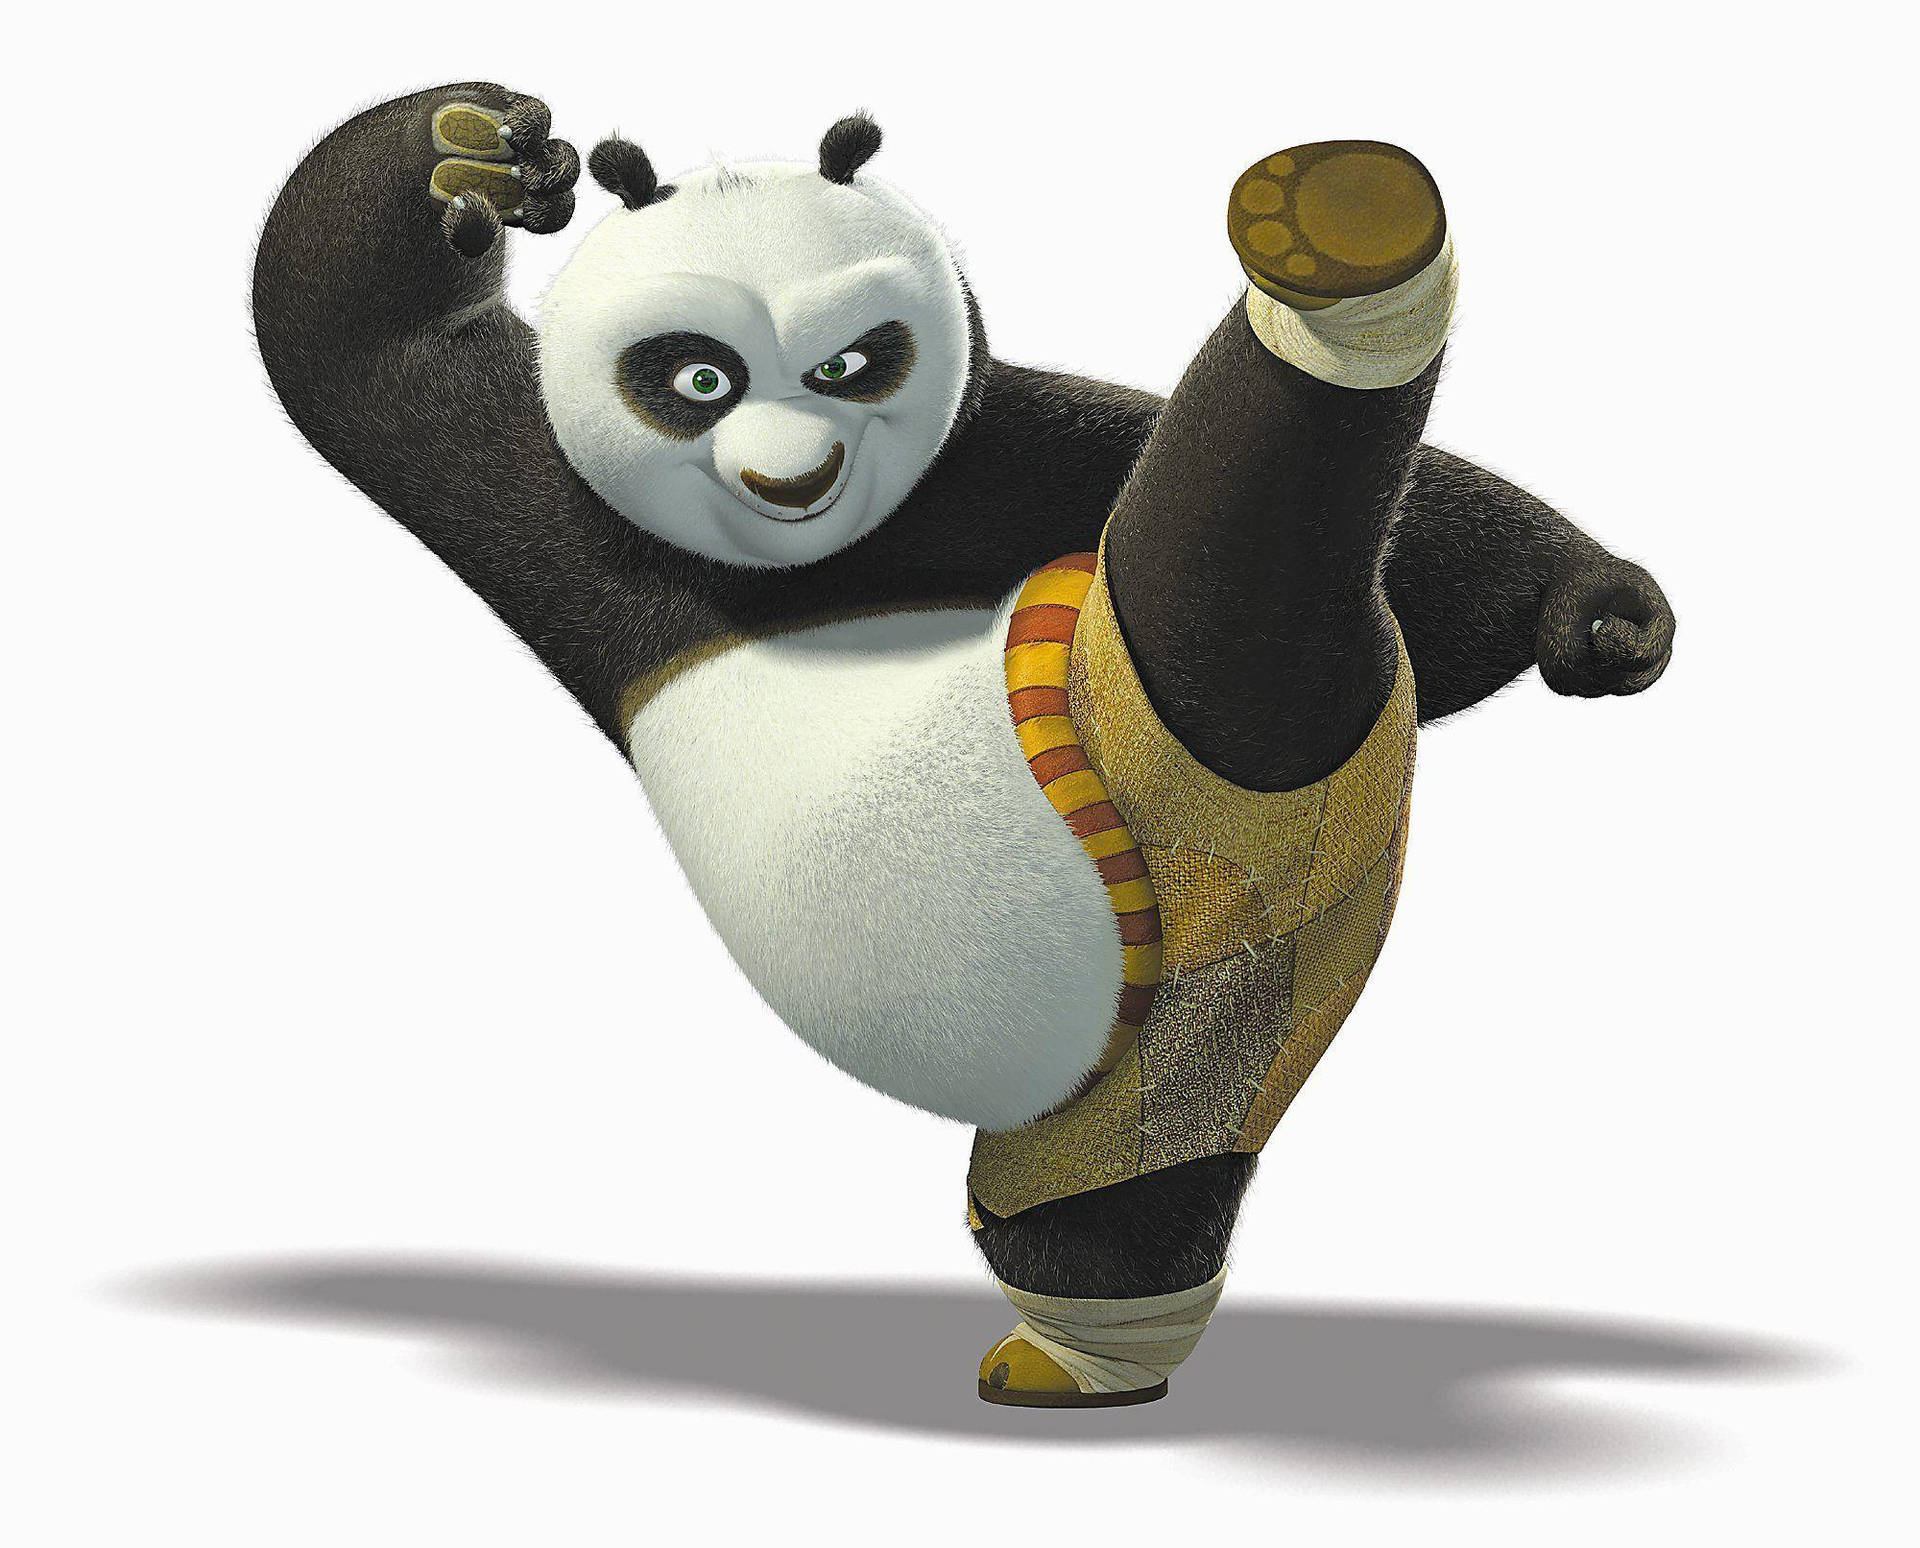 Free Kung Fu Panda Wallpaper Downloads, [200+] Kung Fu Panda Wallpapers for  FREE 